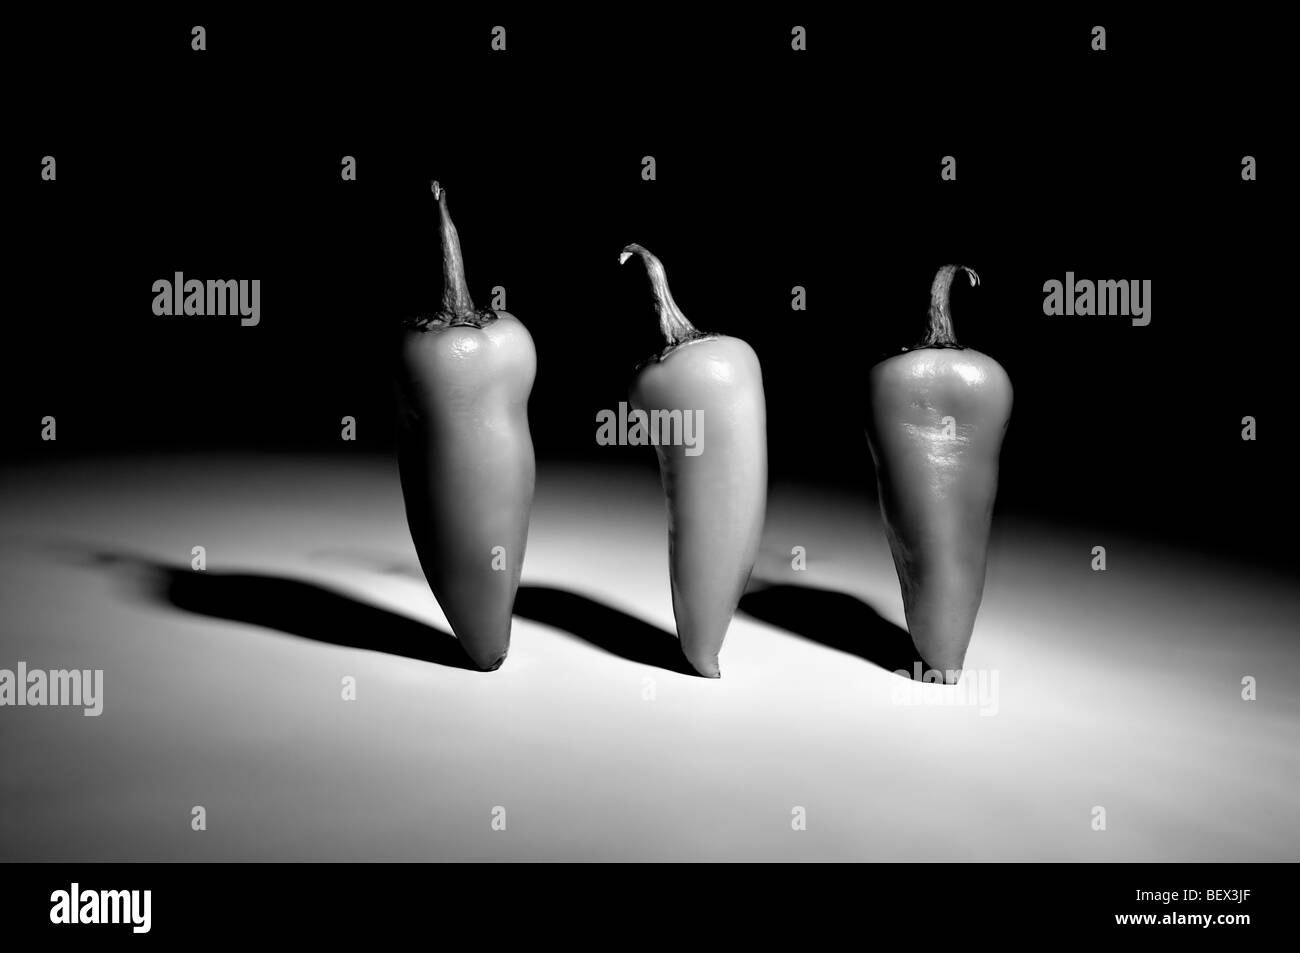 Schwarz / weiß künstlerische Studioaufnahme von drei Chilischoten aufstehen mit dramatische Beleuchtung, Schatten zu geben Stockfoto